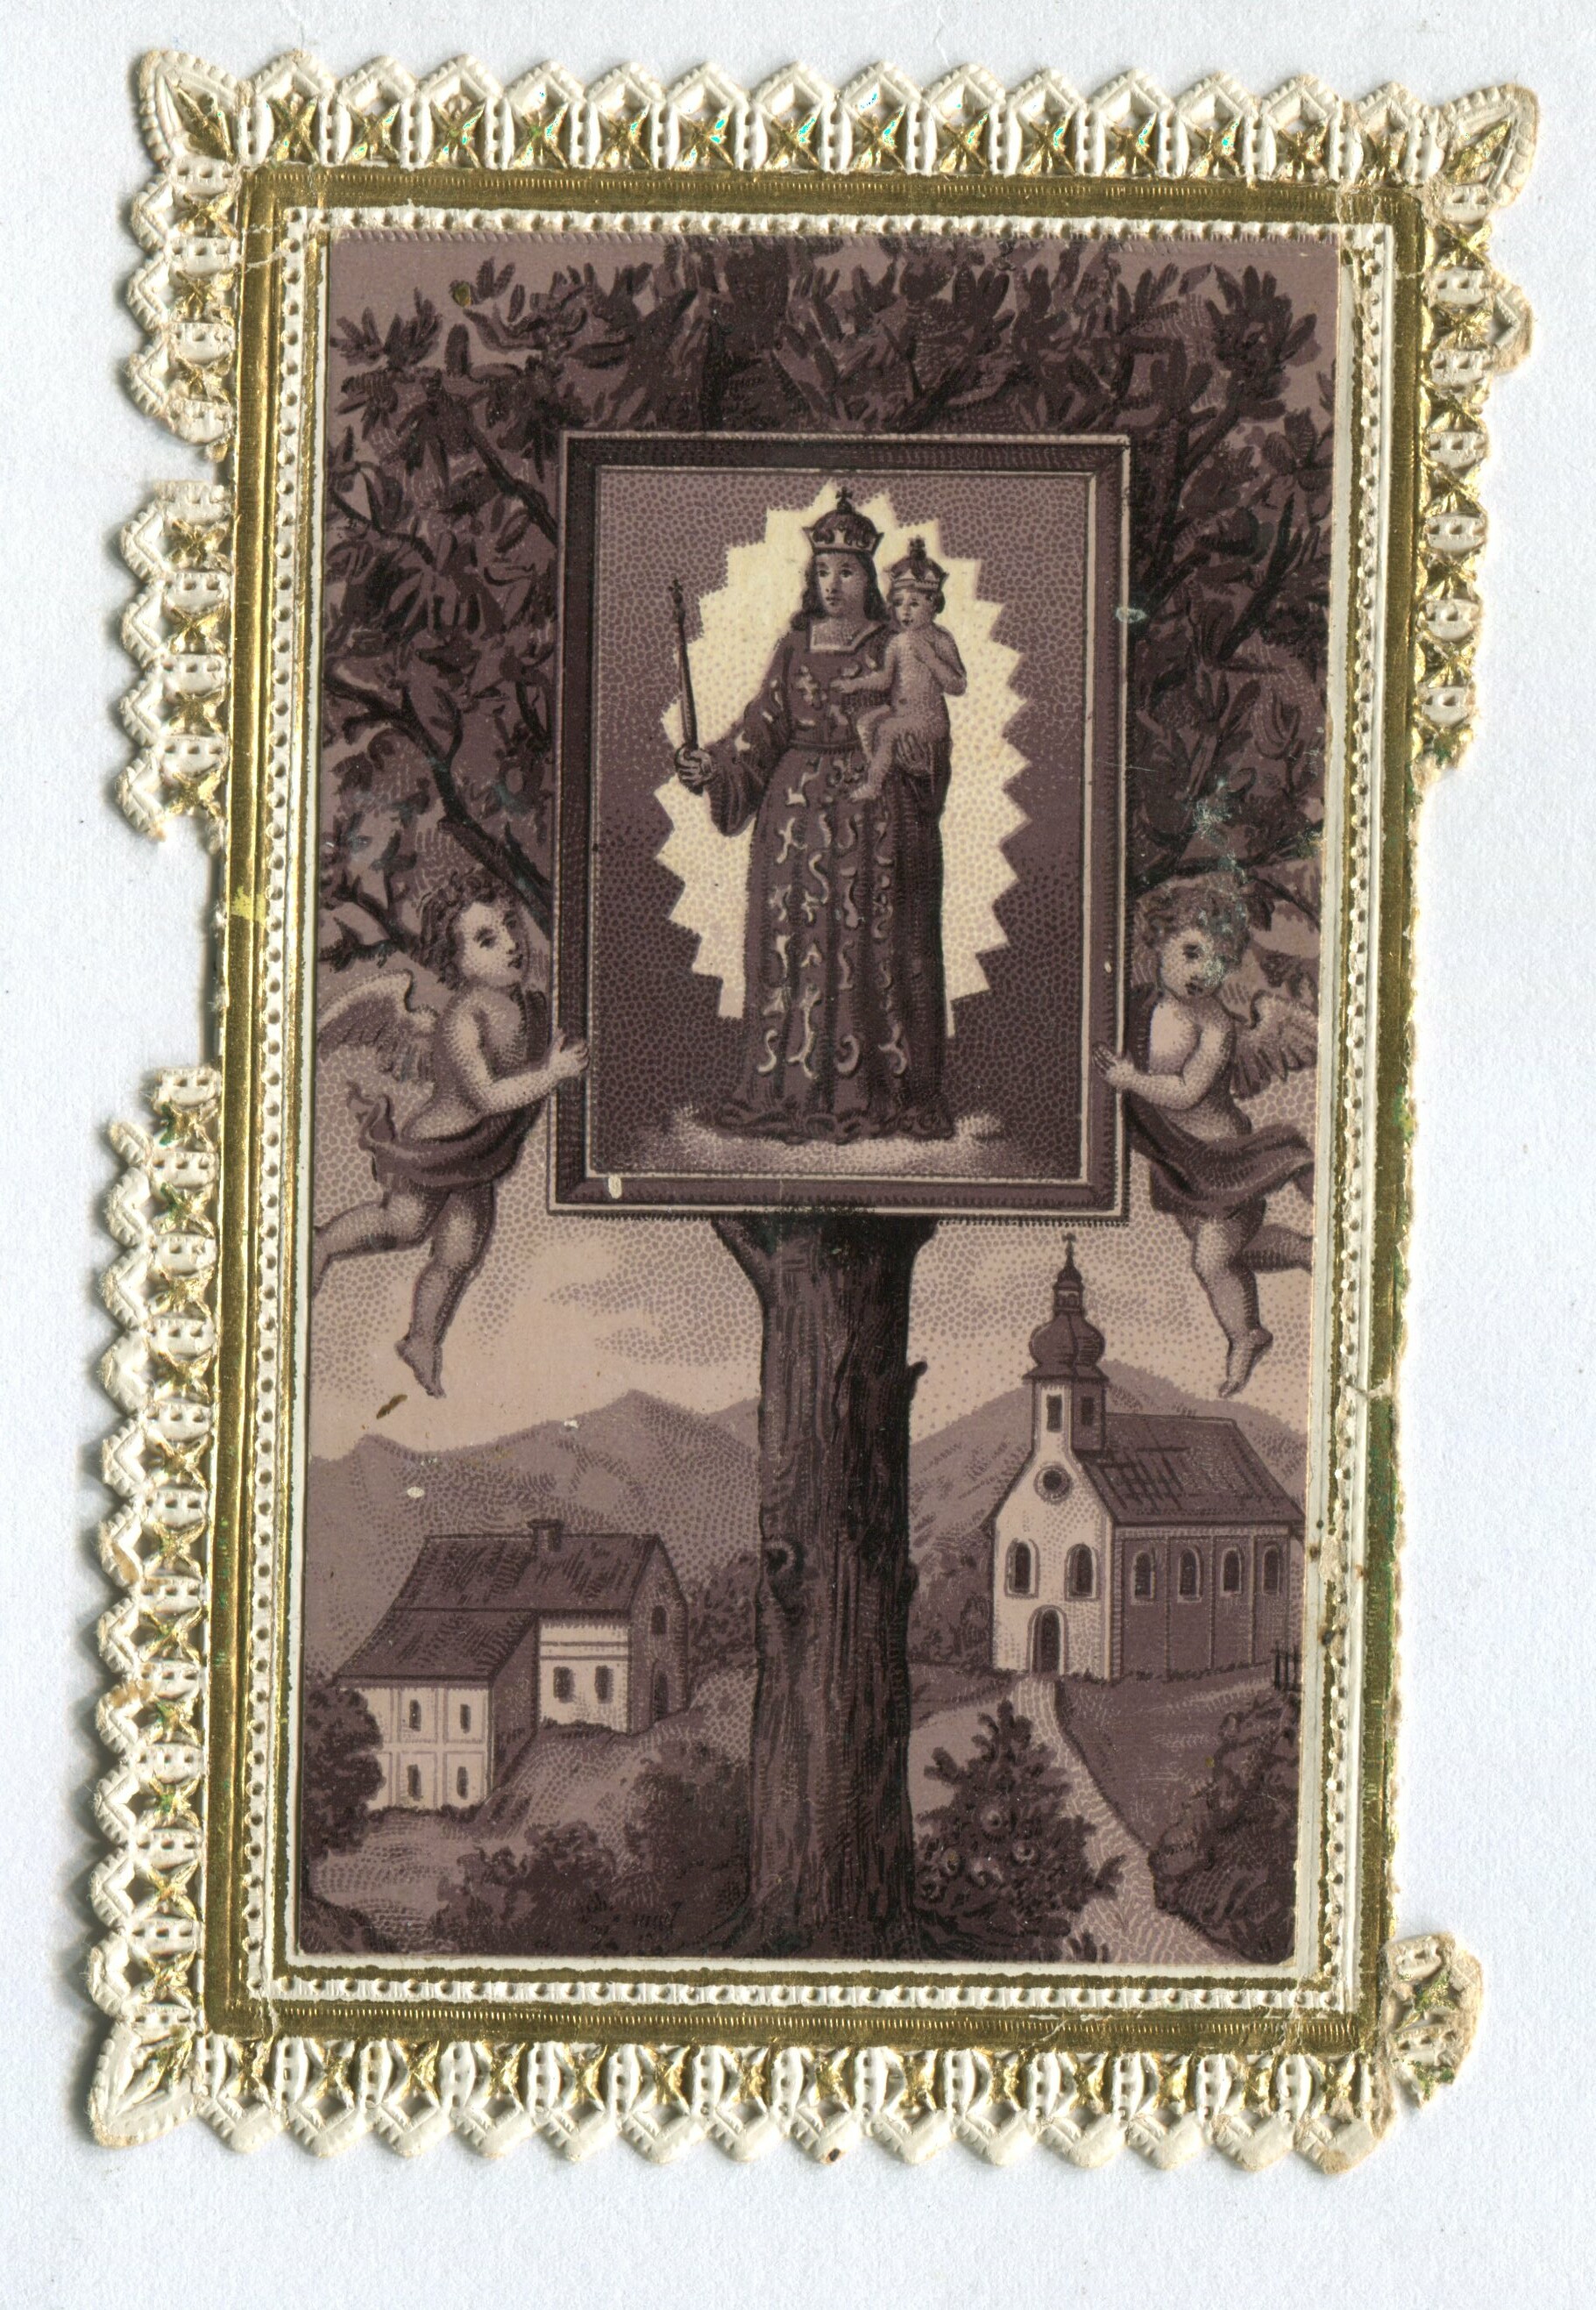 Szentkép/Heiligenbildchen (Bleyer Jakab Helytörténeti Gyűjtemény, Heimatmuseum CC BY-NC-SA)